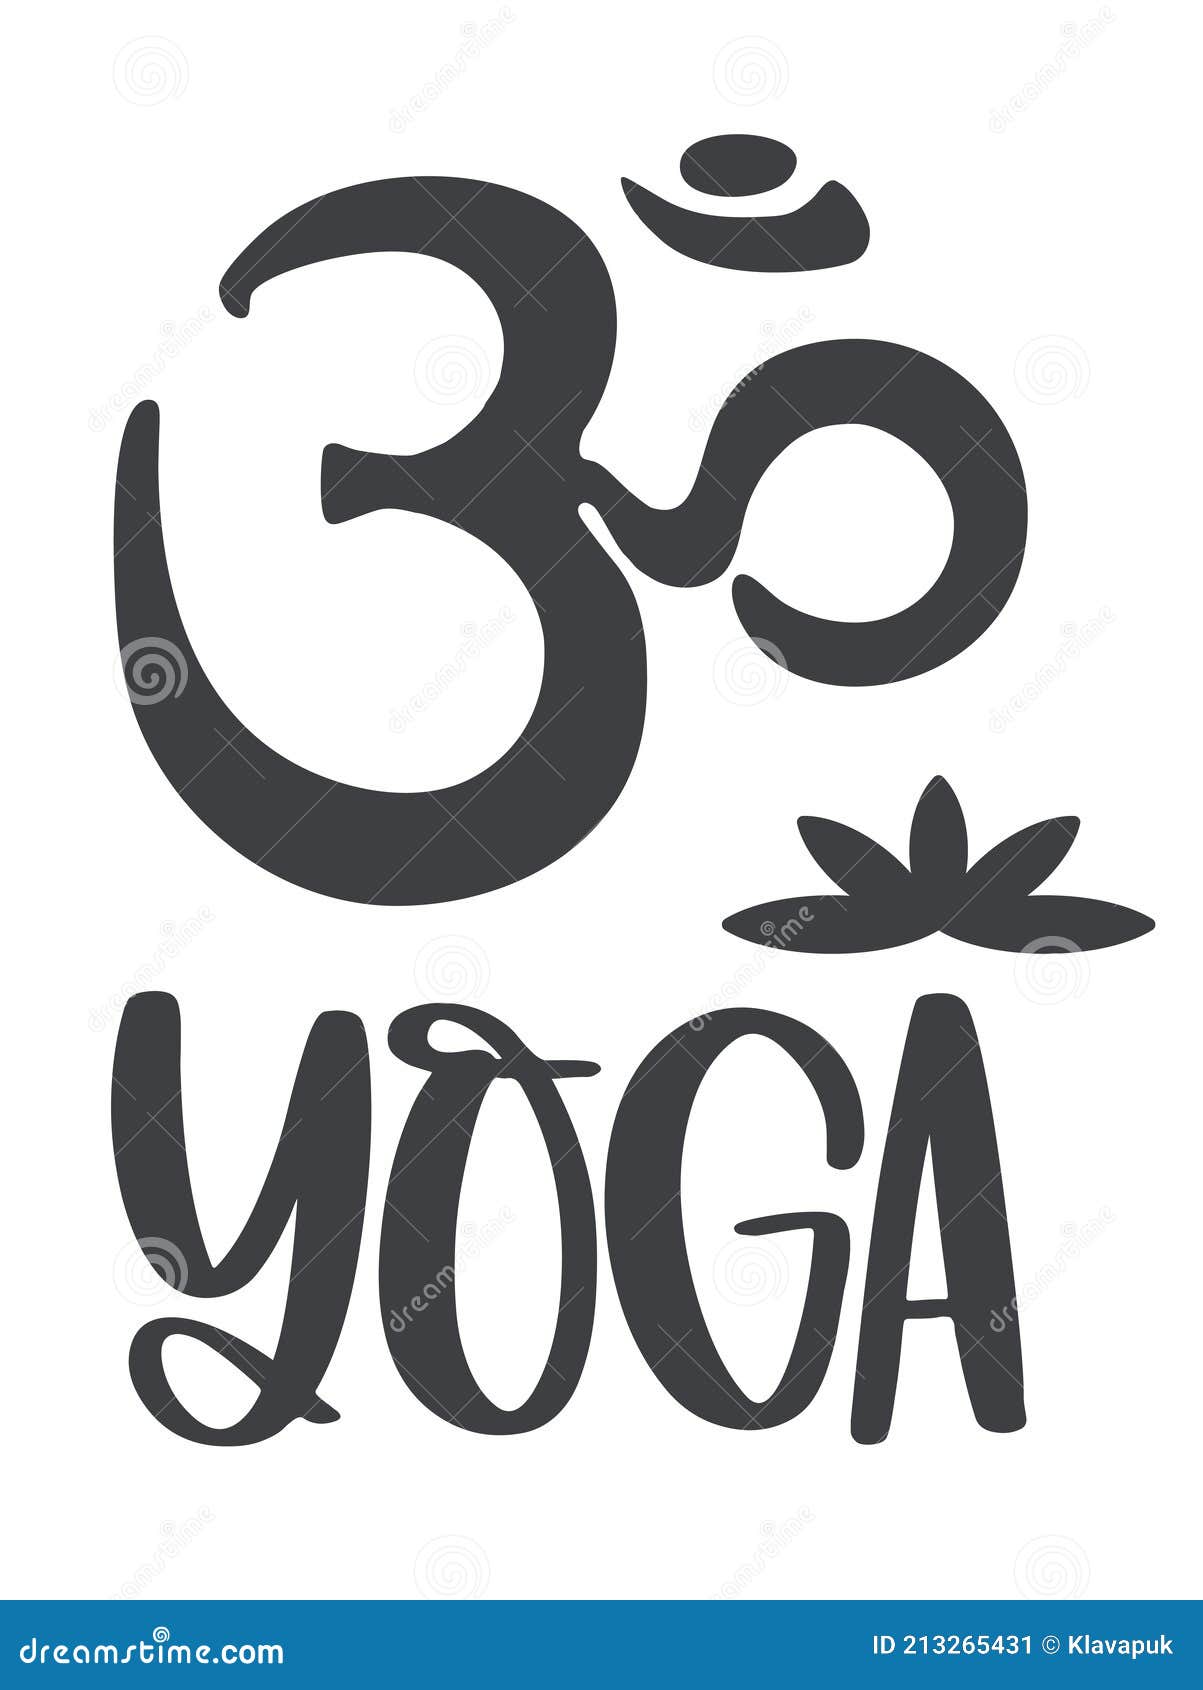 Símbolo Om E a Inscrição Yoga Com a Imagem De Uma Flor De Lótus